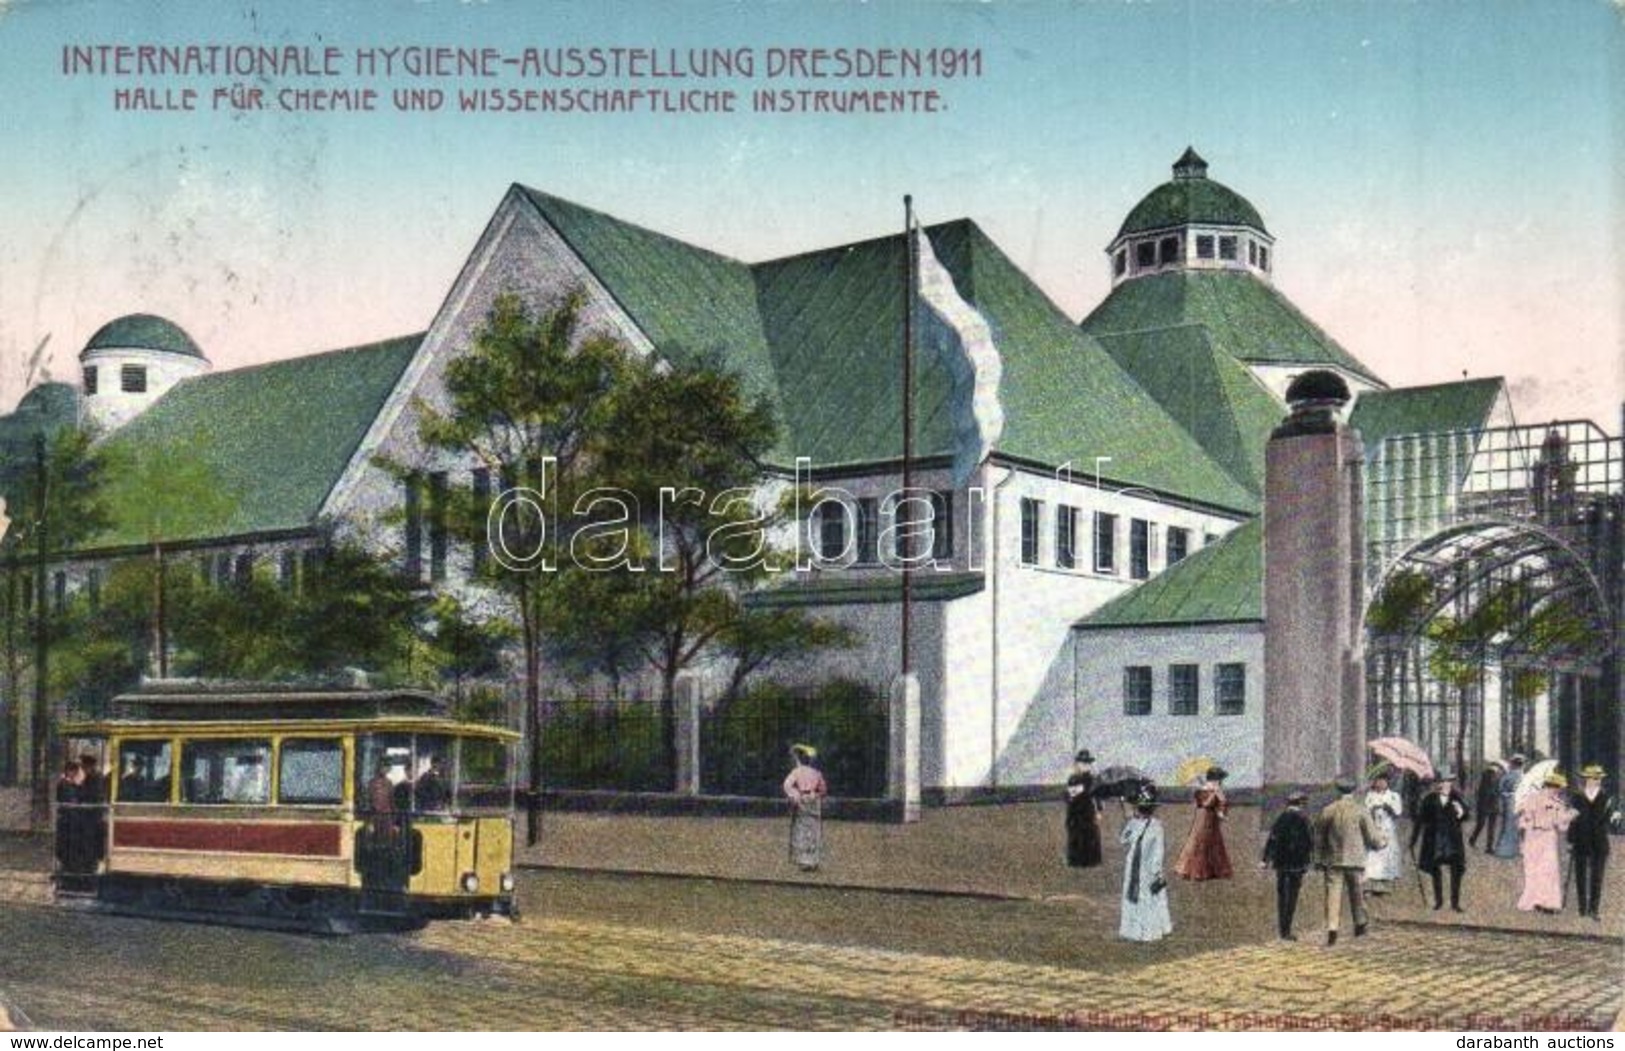 T2/T3 1911 Dresden, Internationale Hygiene-Ausstellung, Halle Für Chemie Und Wissenschaftliche Instrumente / Internation - Unclassified